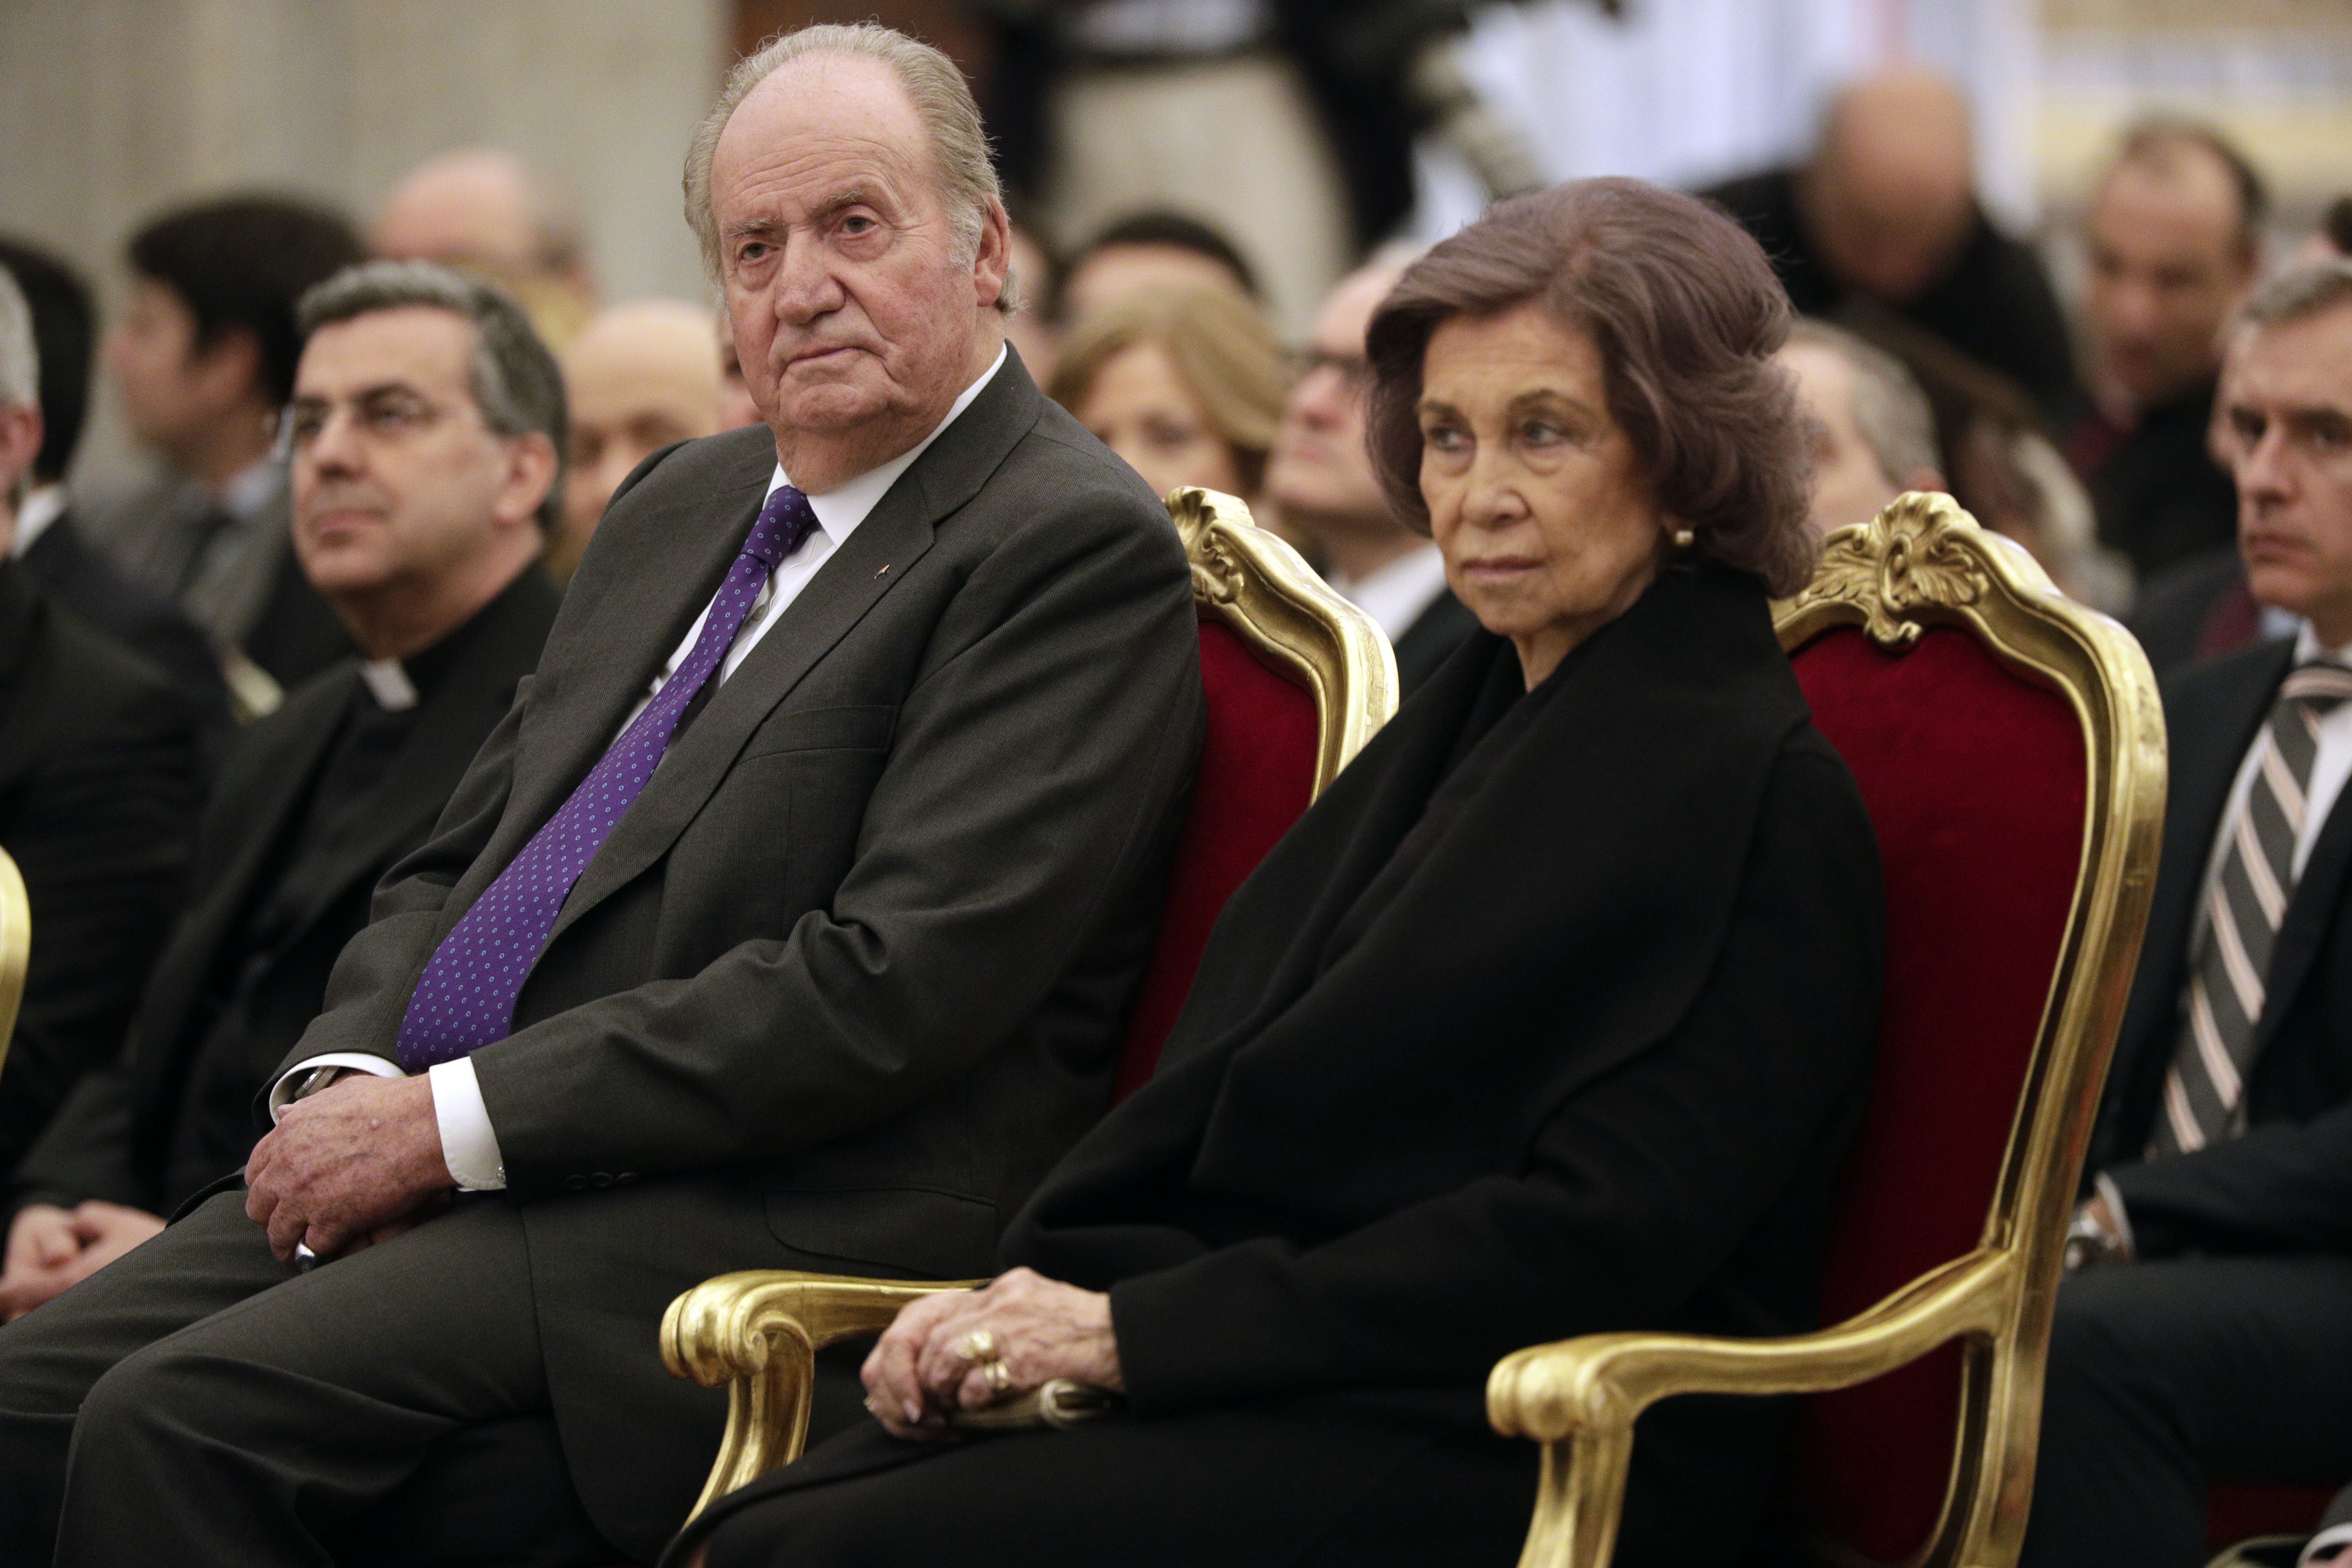 La ira de Juan Carlos por acompañar a Sofía y no a Bolsonaro: "¡A tomar por c...!"